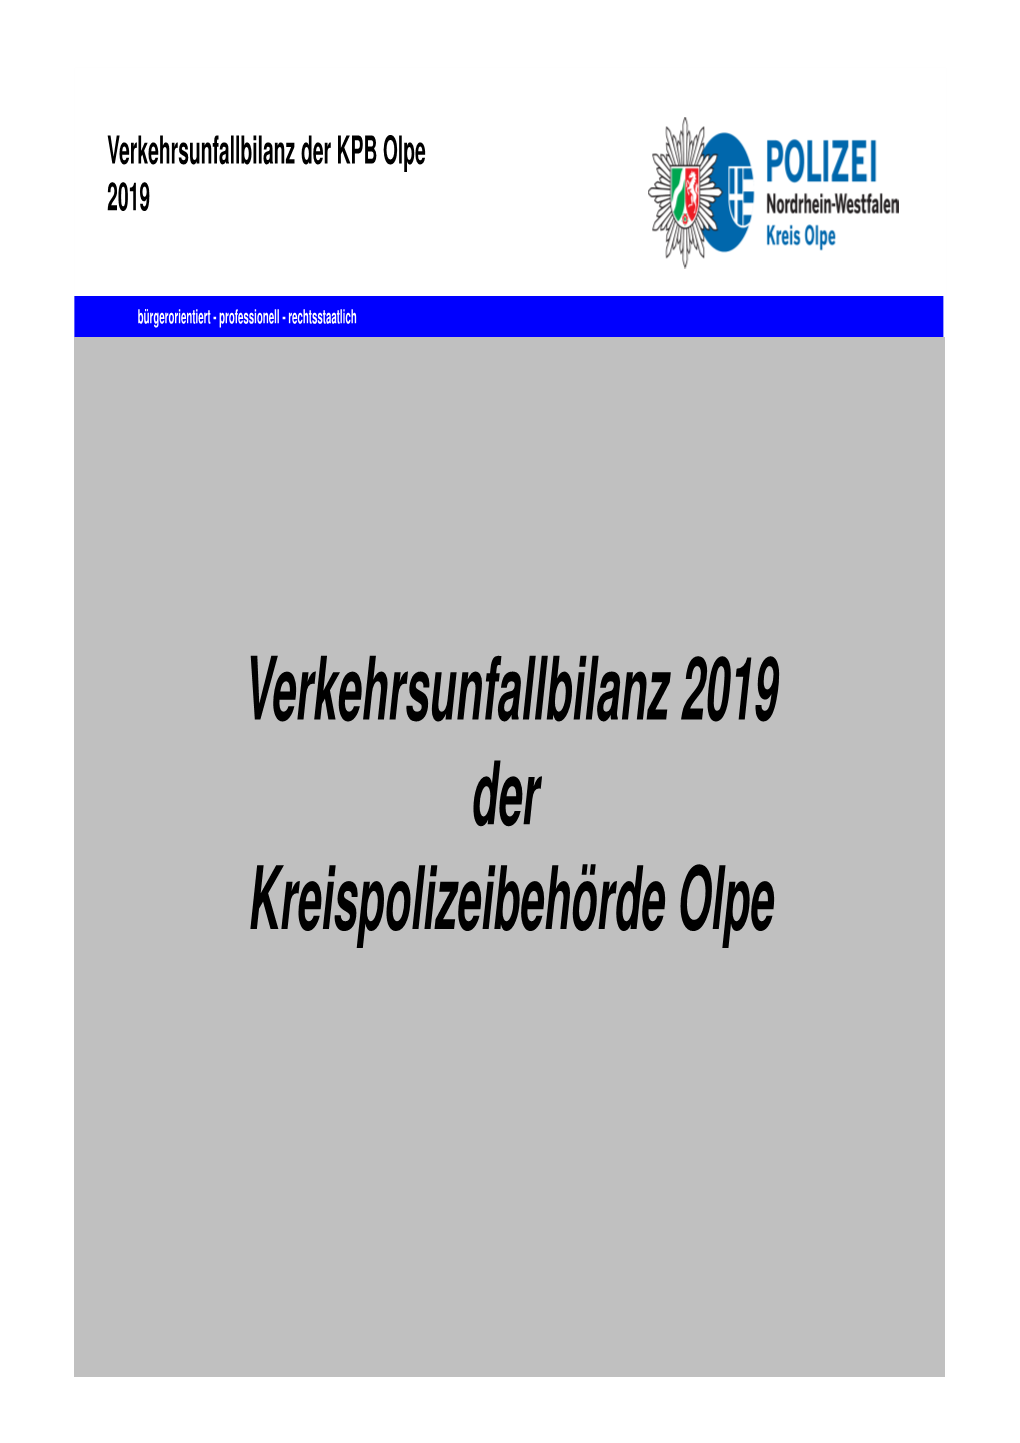 Verkehrsunfallbilanz 2019 Der Kreispolizeibehörde Olpe Verkehrsunfallbilanz Der KPB Olpe 2019